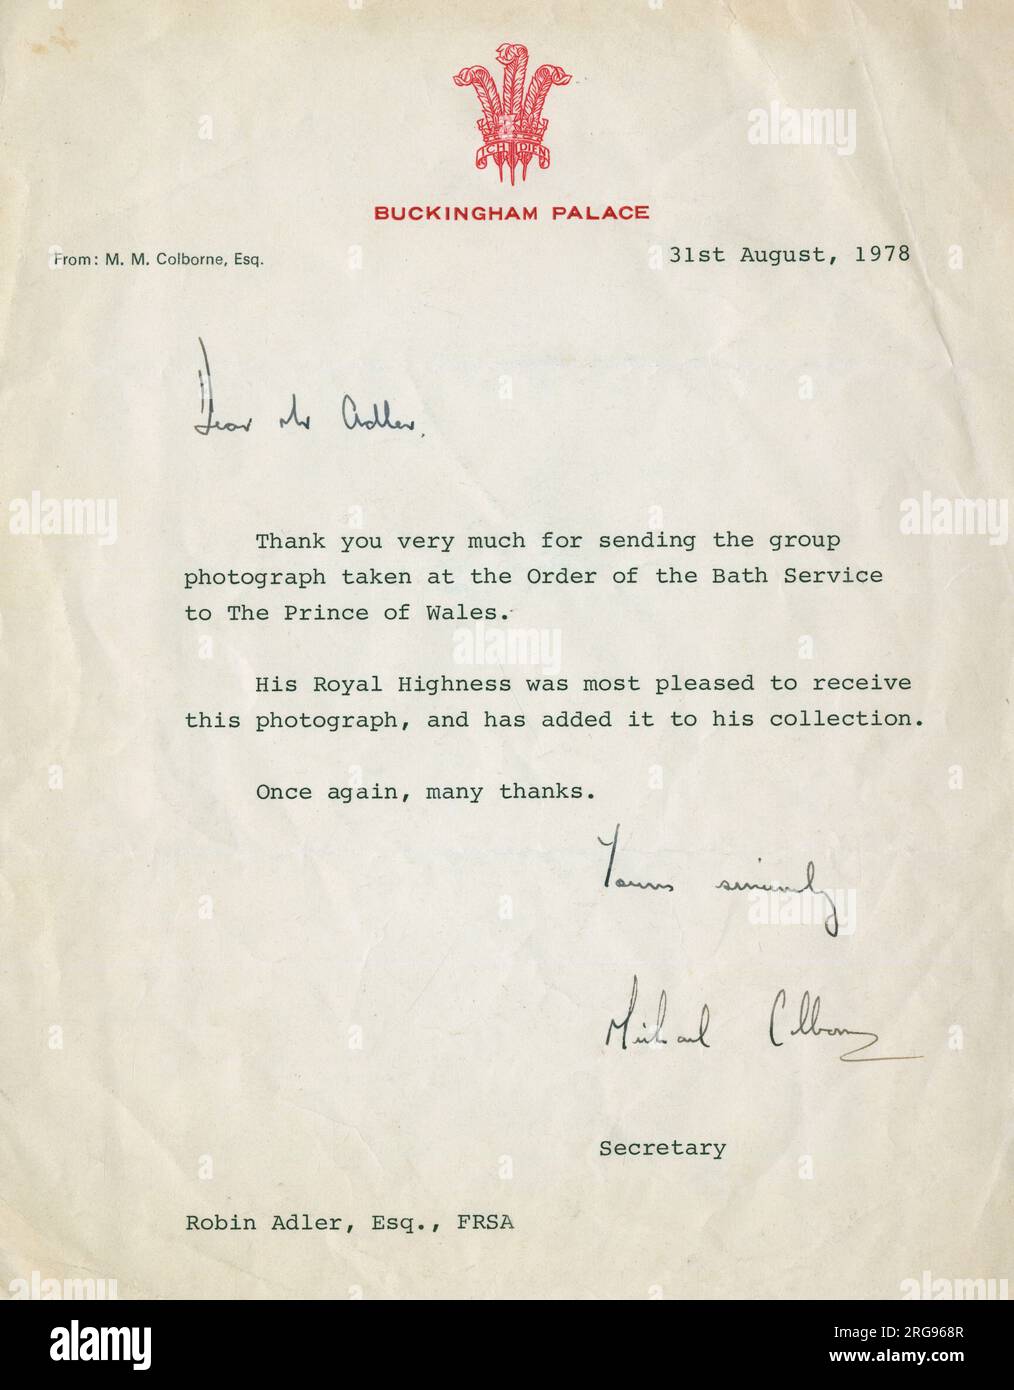 Schreiben des Buckingham Palace, in dem dem Fotografen für ein Gruppenfoto mit Königin Elizabeth II. Und Prinz Charles für einen Orden des Bath in Westminster Abbey, London, gedankt wird. Prinz Charles wurde 1974 zum großen Meister des Bath-Ordens und wurde 1975 offiziell eingesetzt. Stockfoto